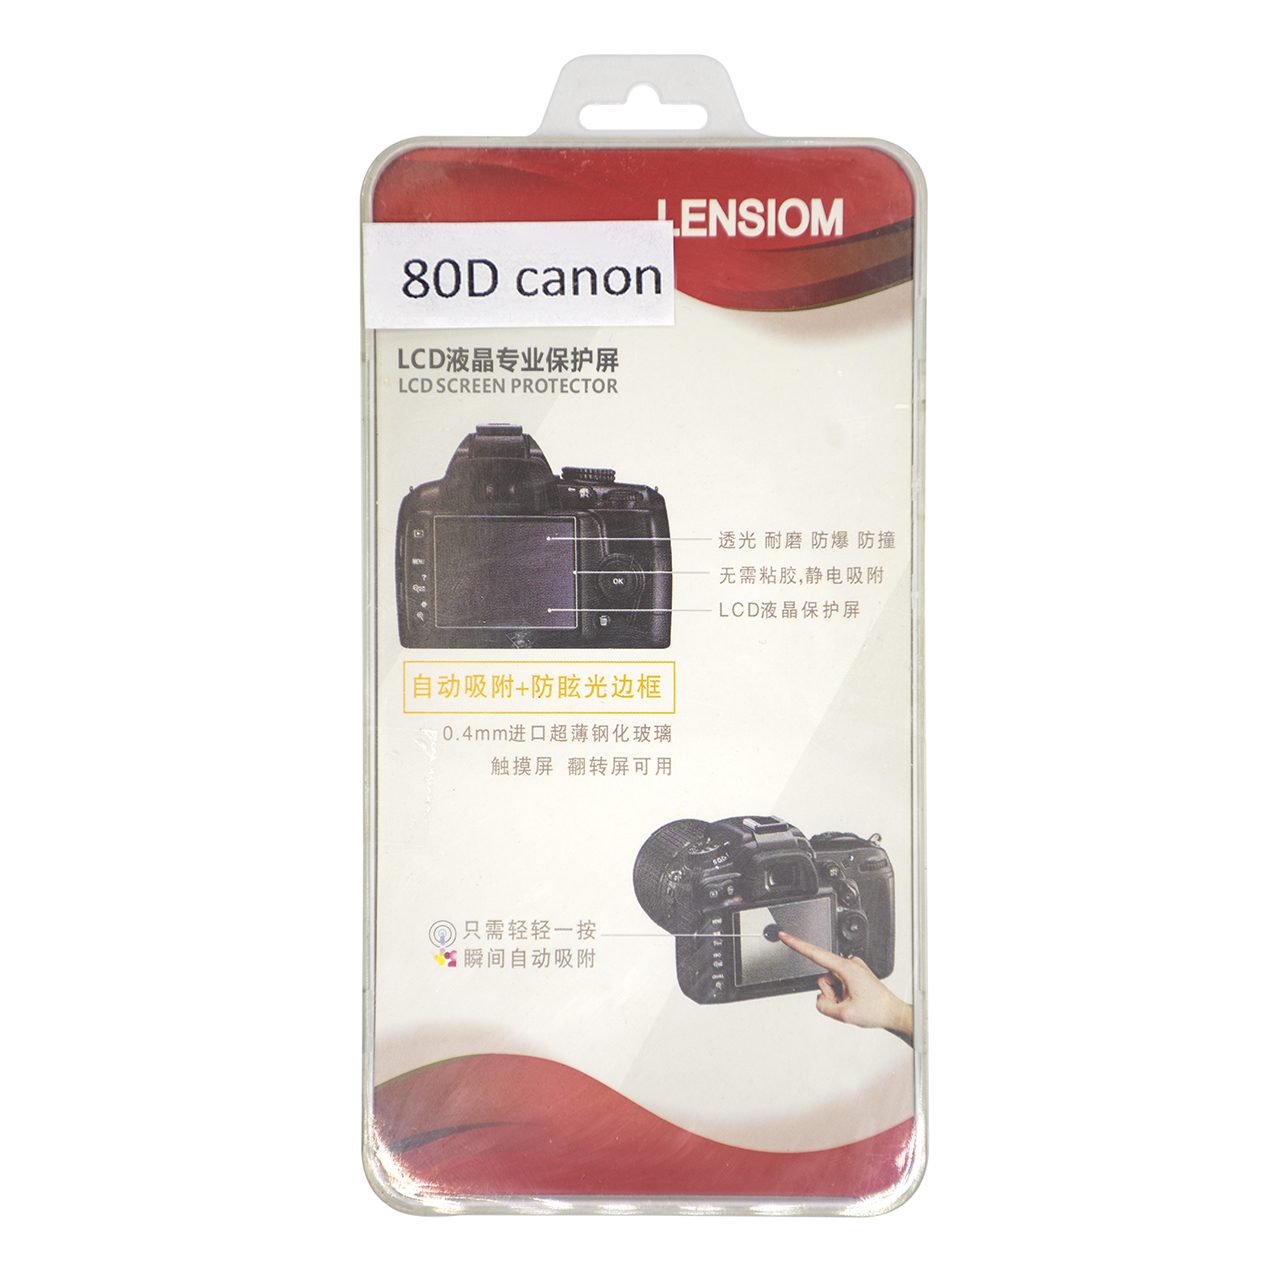 محافظ صفحه نمایش دوربین لنزیوم مدل L80D مناسب برای کانن 80D